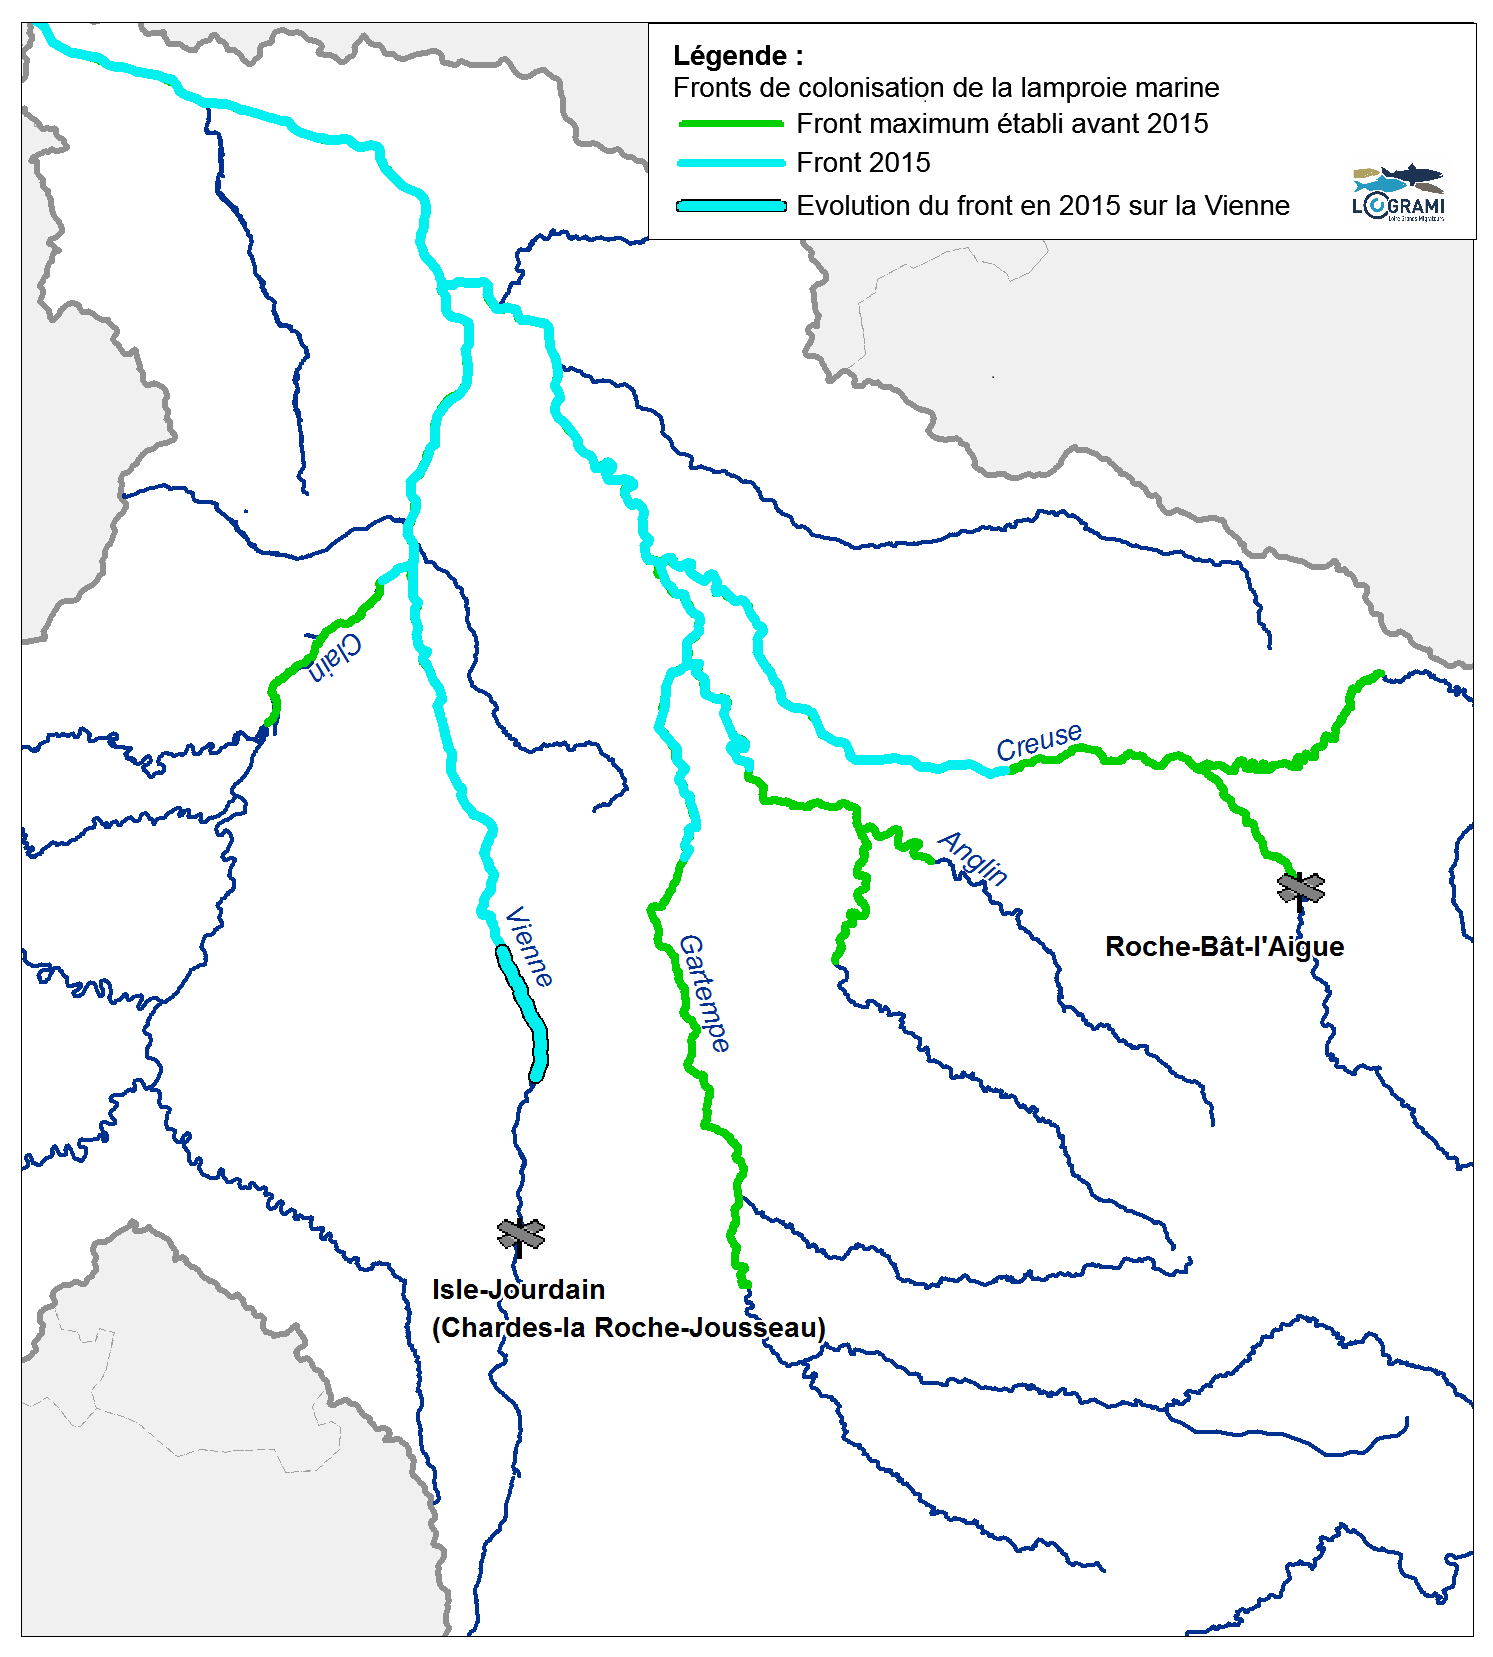 Fronts de colonisation de la lamproie marine sur le bassin Vienne en 2015